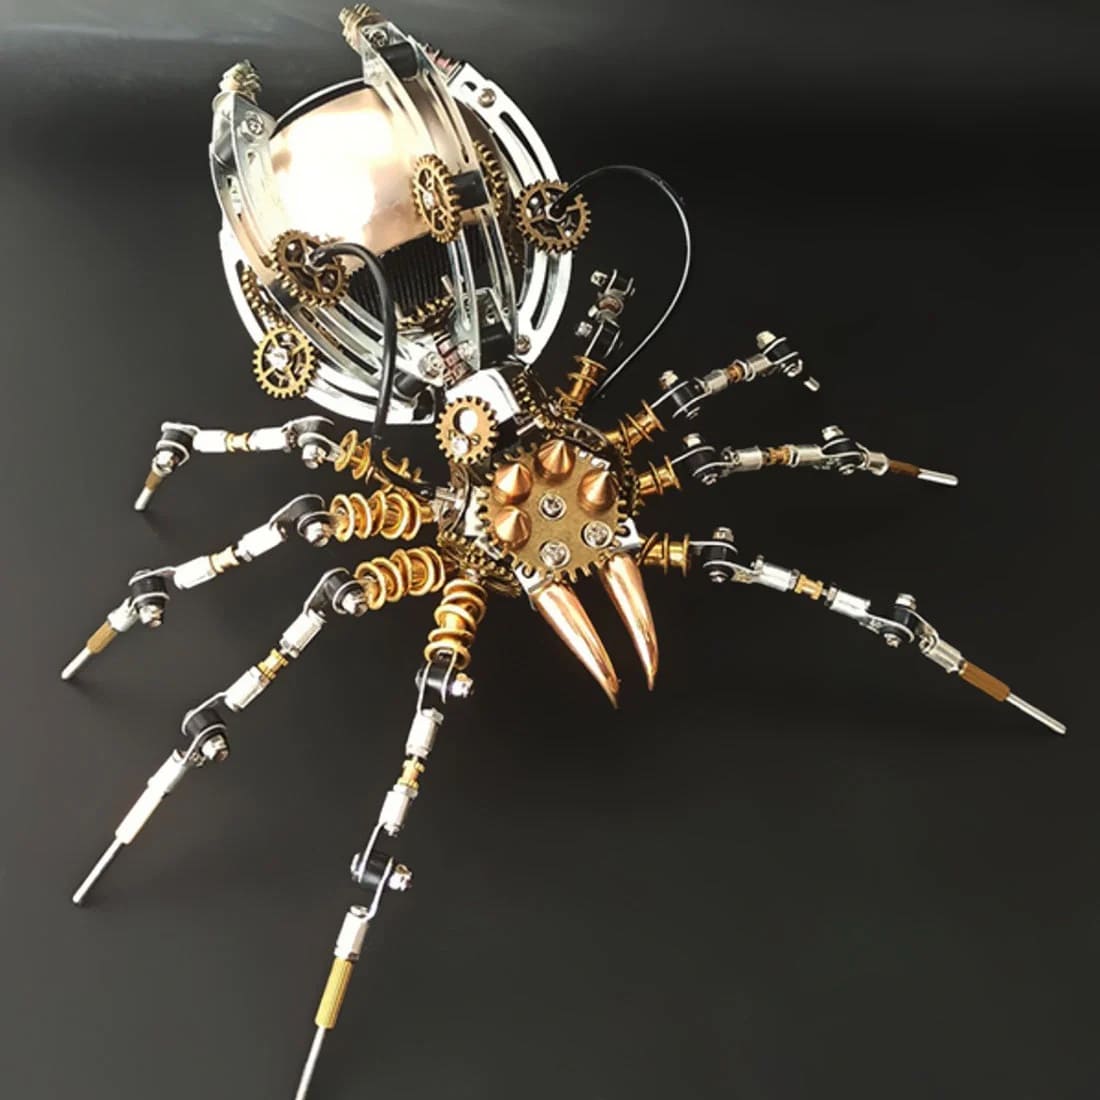 3D蜘蛛模型+蓝牙音箱